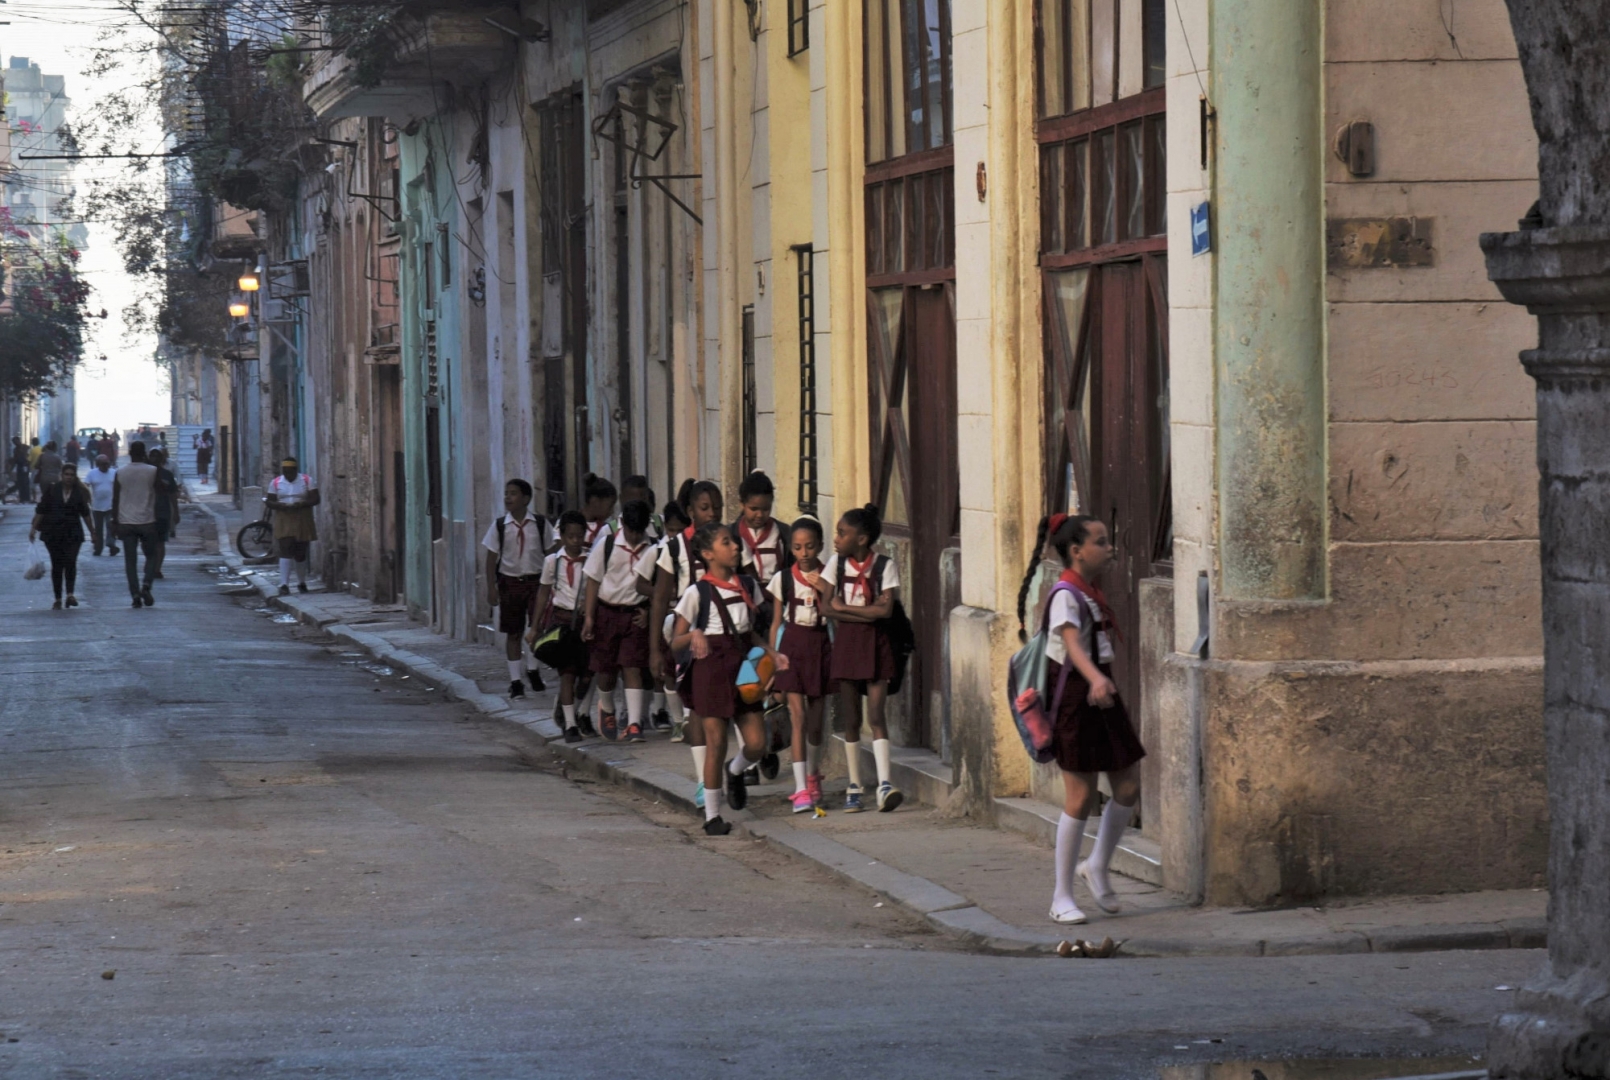 Кубинские школьники (включая детсадовцев) носят униформу. Верх одежды всех образовательных этапов белого цвета, низ — различается по цветам в зависимости от возраста учащихся. У всех синий или красный галстук. Гавана, Куба